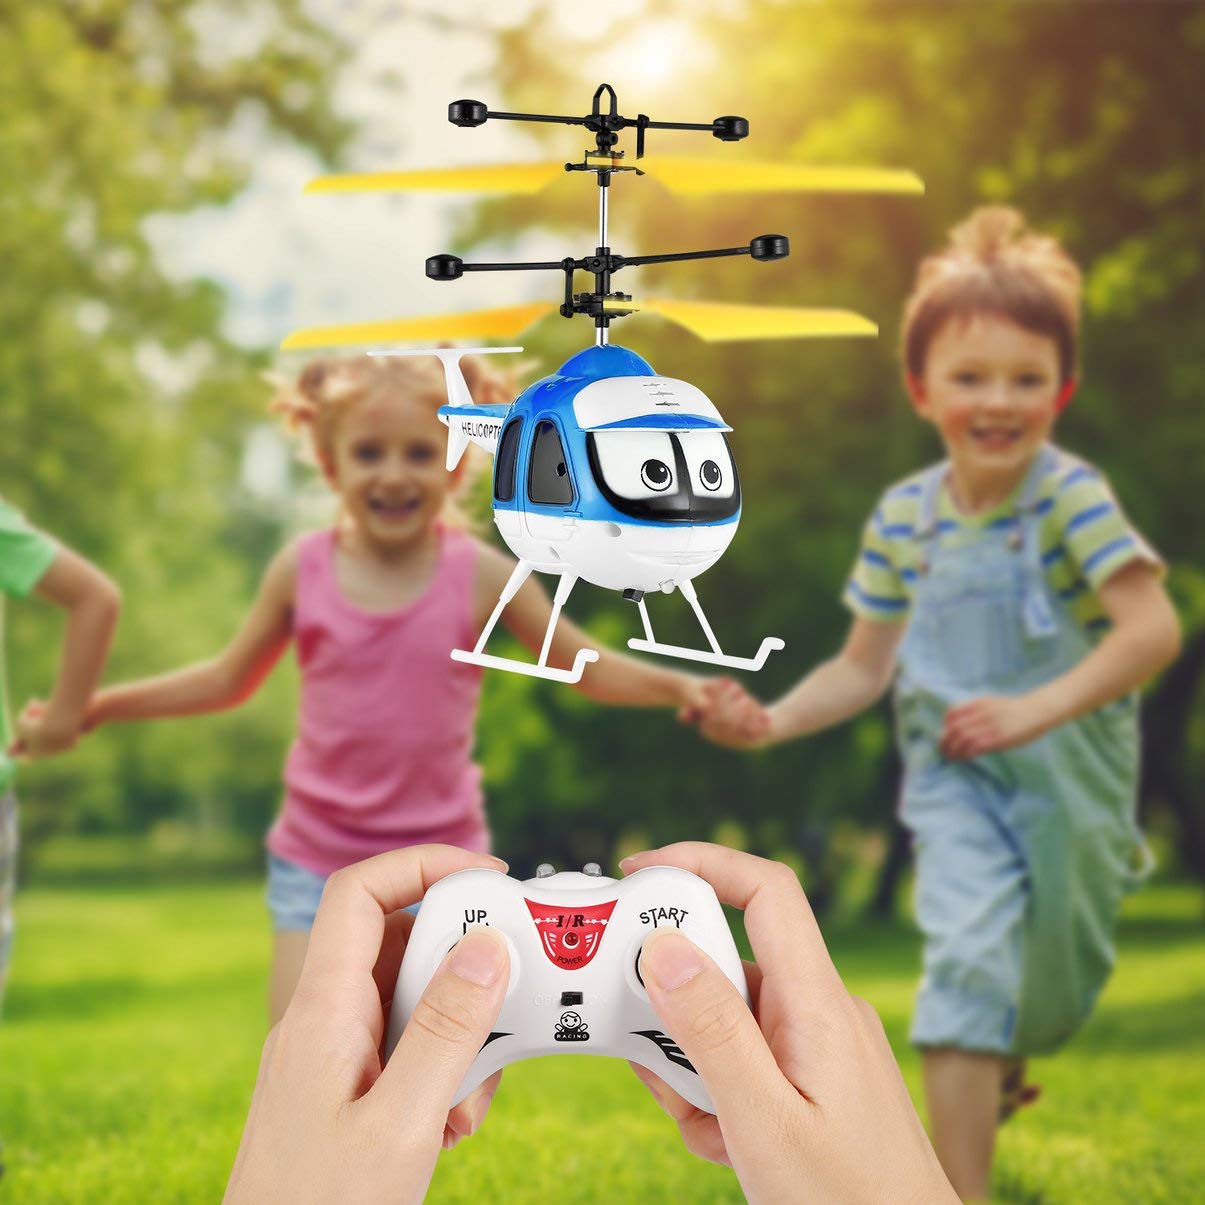 Achetez des drones radiocommandés pour enfants sur un tableau d'affichage en Israël.